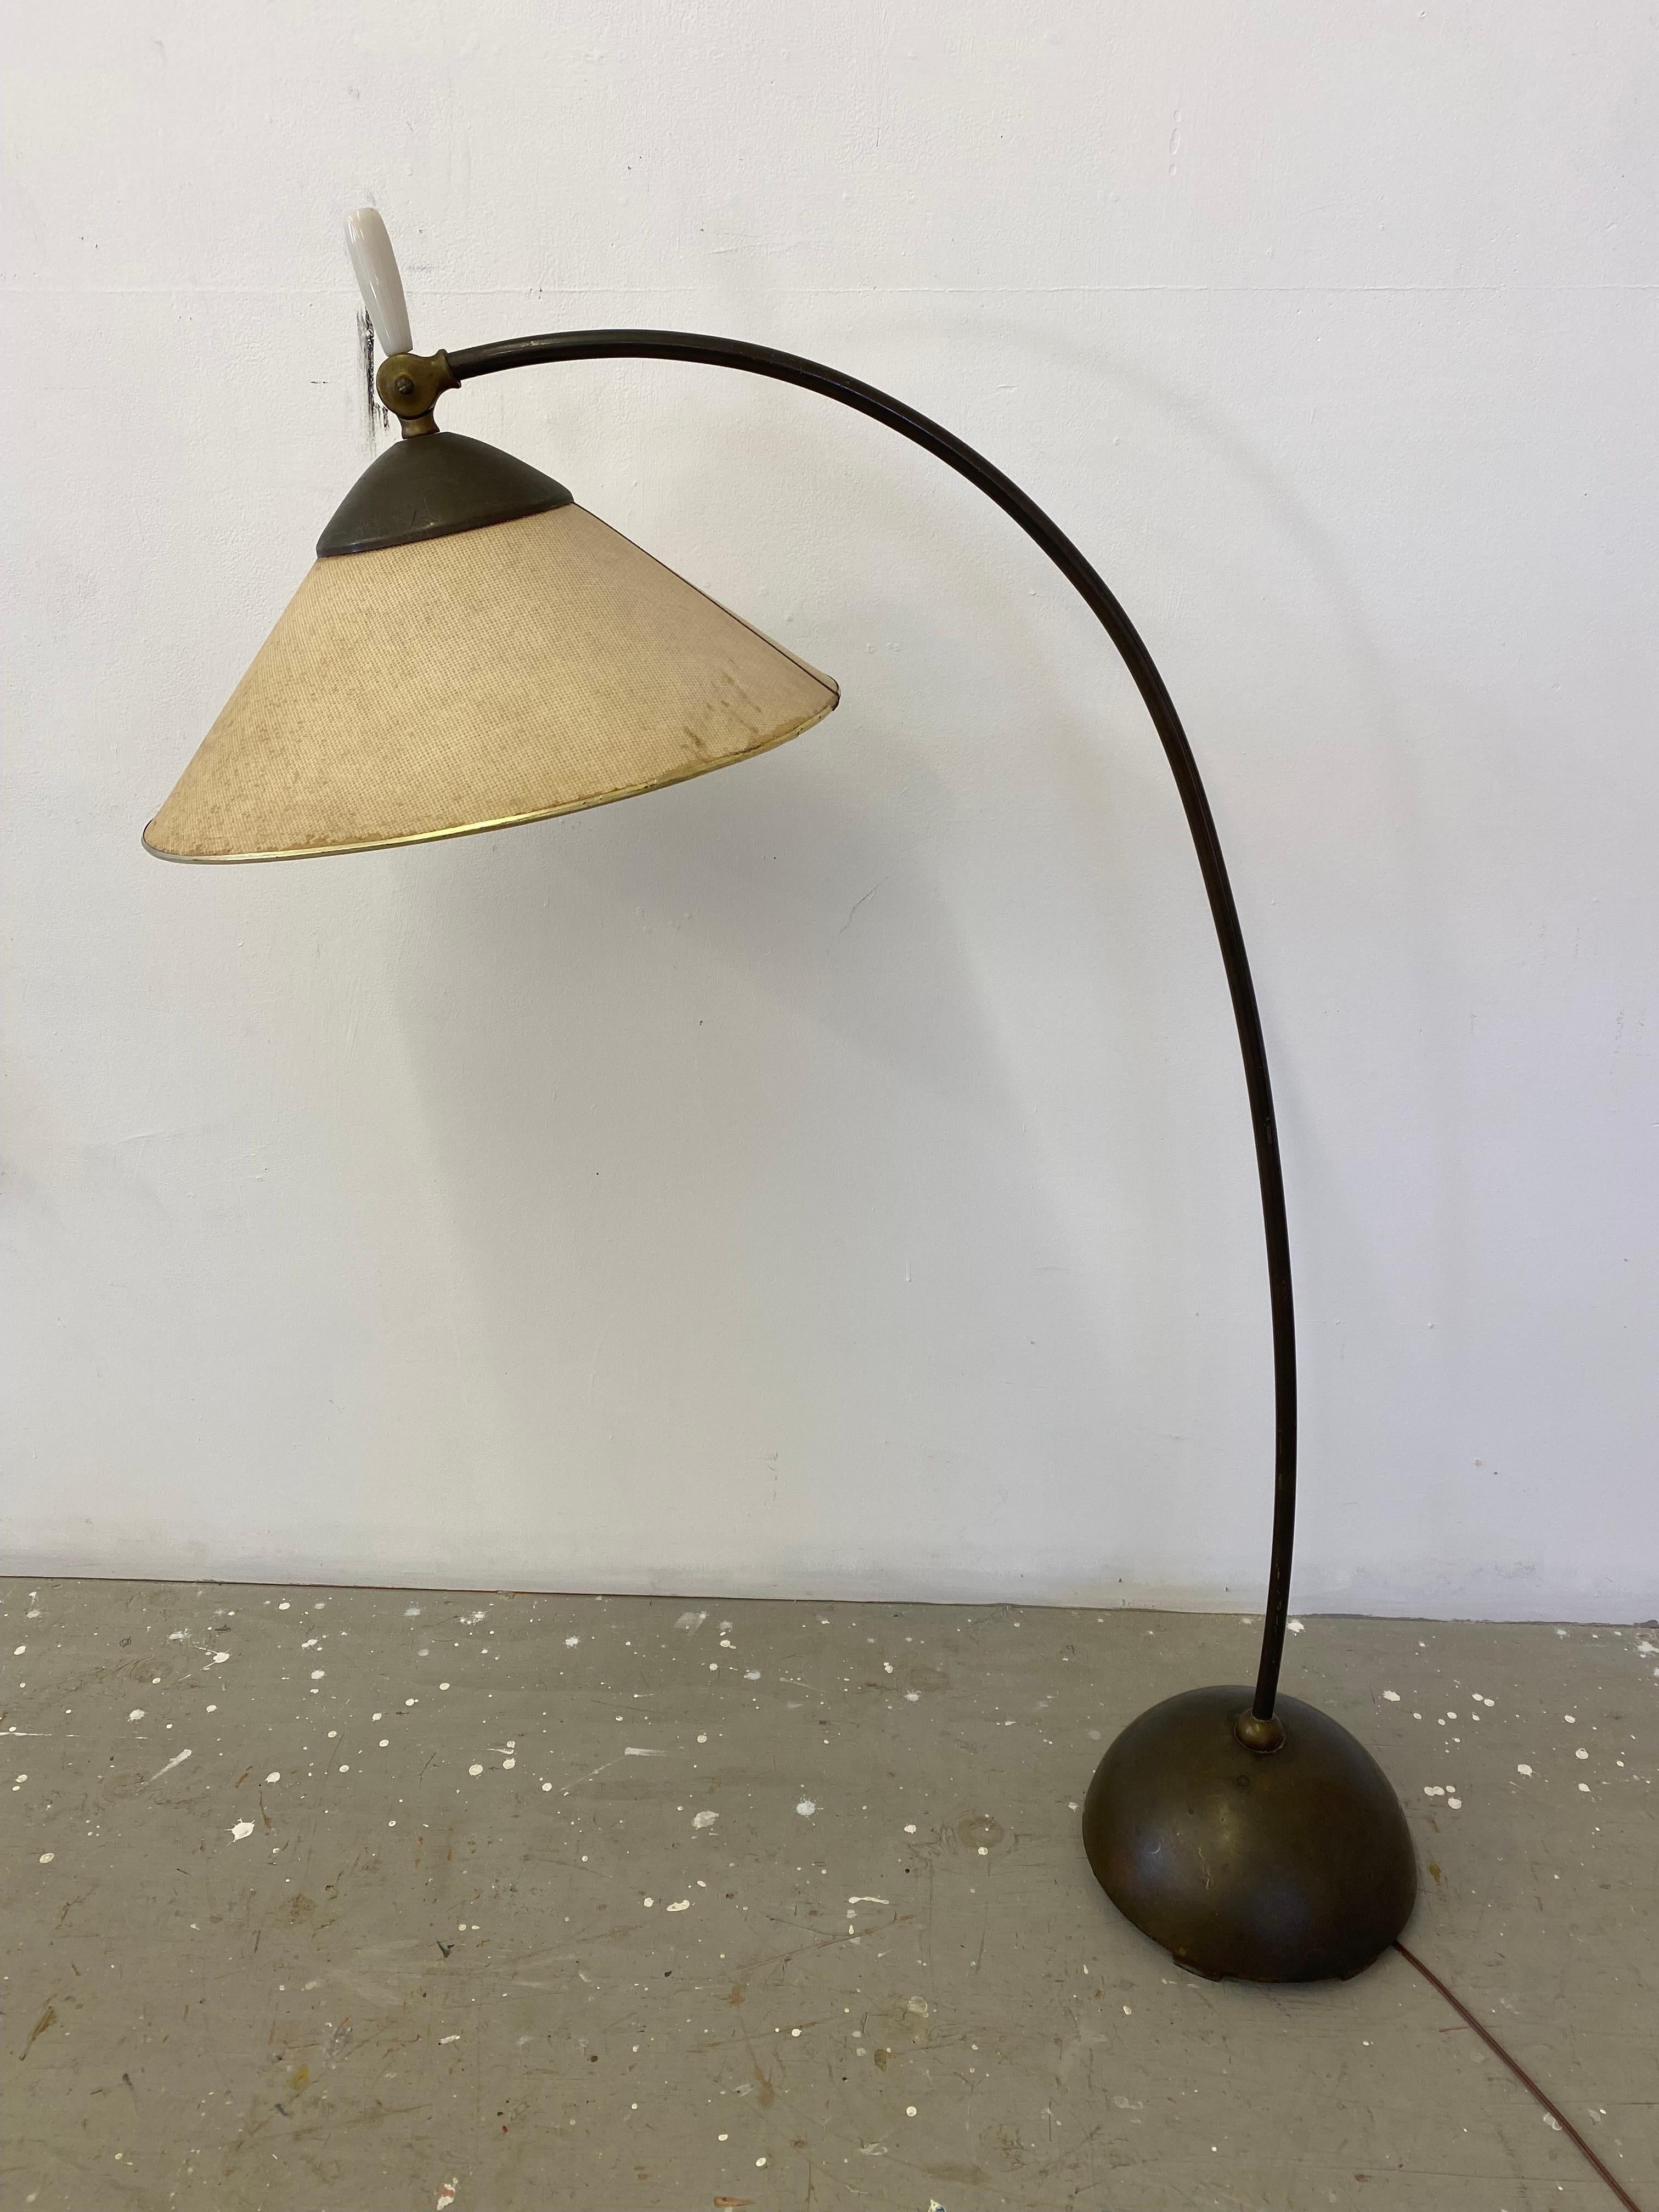 Lampadaire pivotant Russel Wright pour Fairmont Lamp Company, vers 1954. Un exemple incroyablement original ! Abat-jour original en fibre de verre, peinture originale et patine sur le laiton ! La lampe se déplace dans une multitude de positions pour